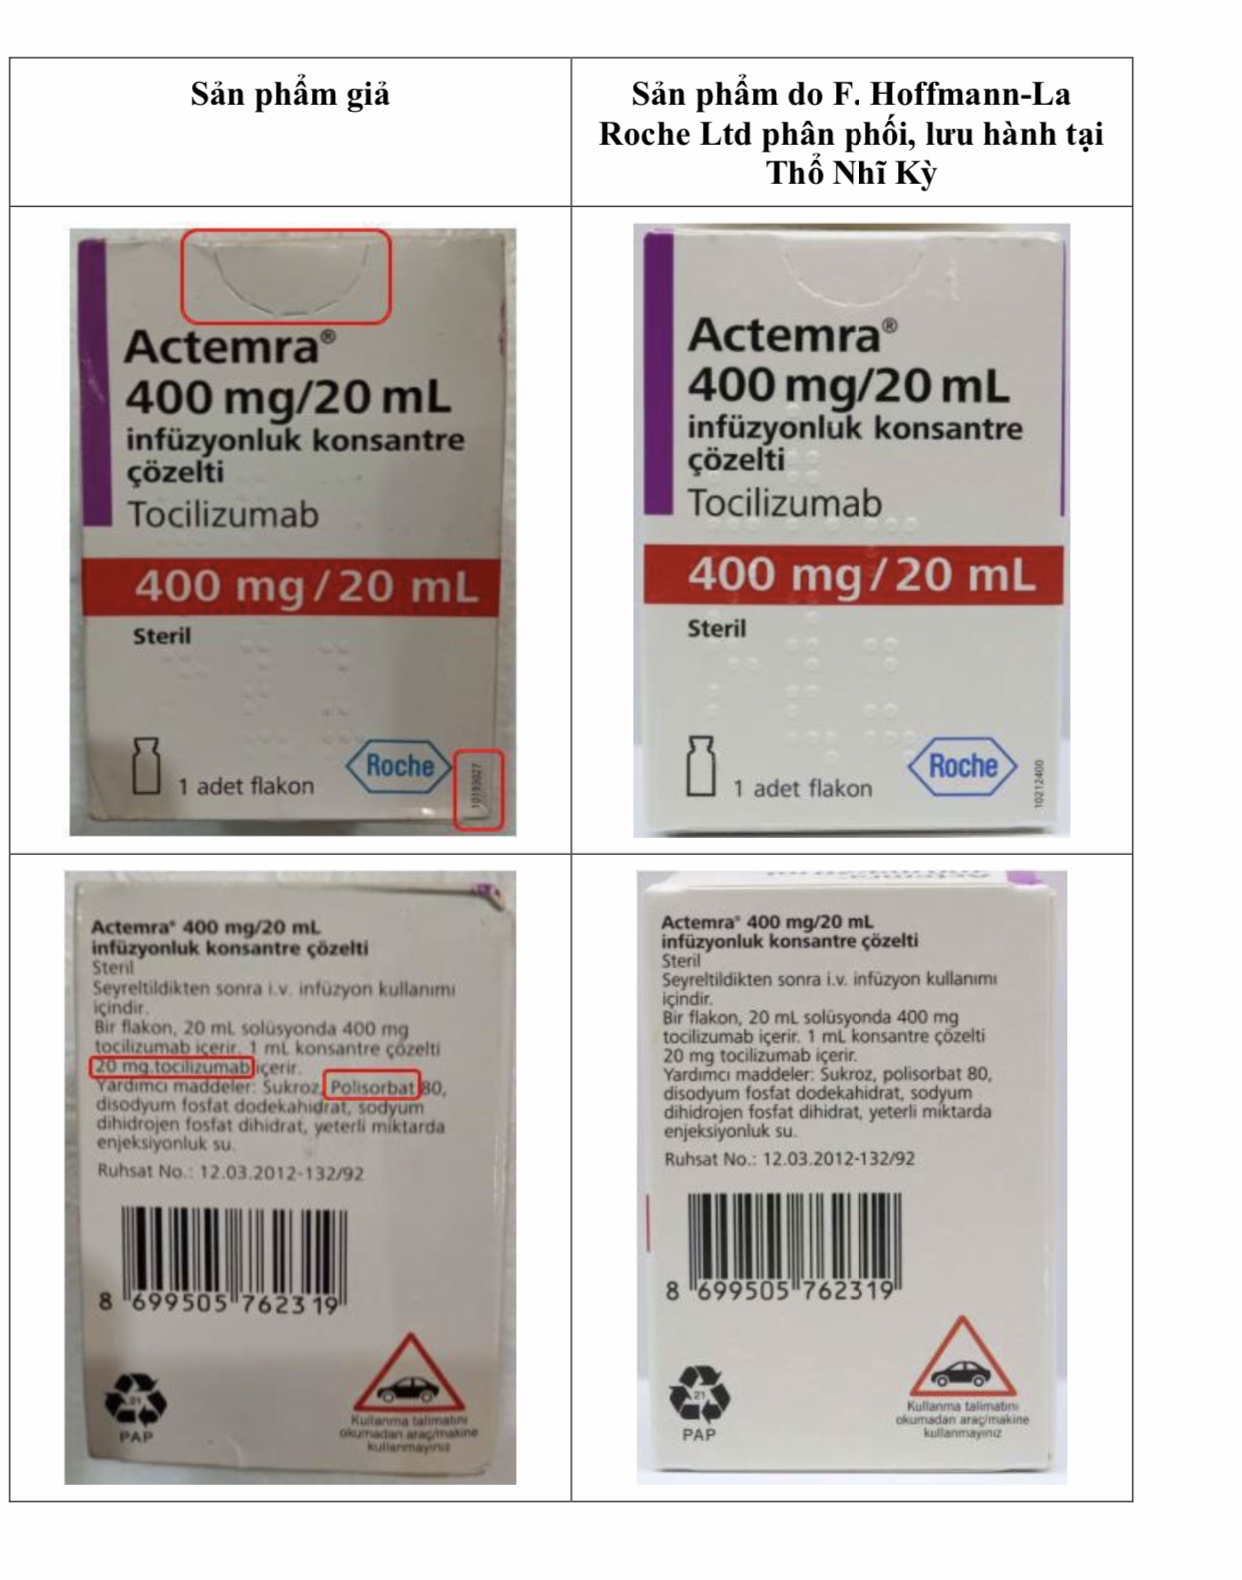 Cục Quản lý Dược thông báo thuốc giả Actemra 400 mg/20 mL xuất hiện trên thị trường - Ảnh 1.